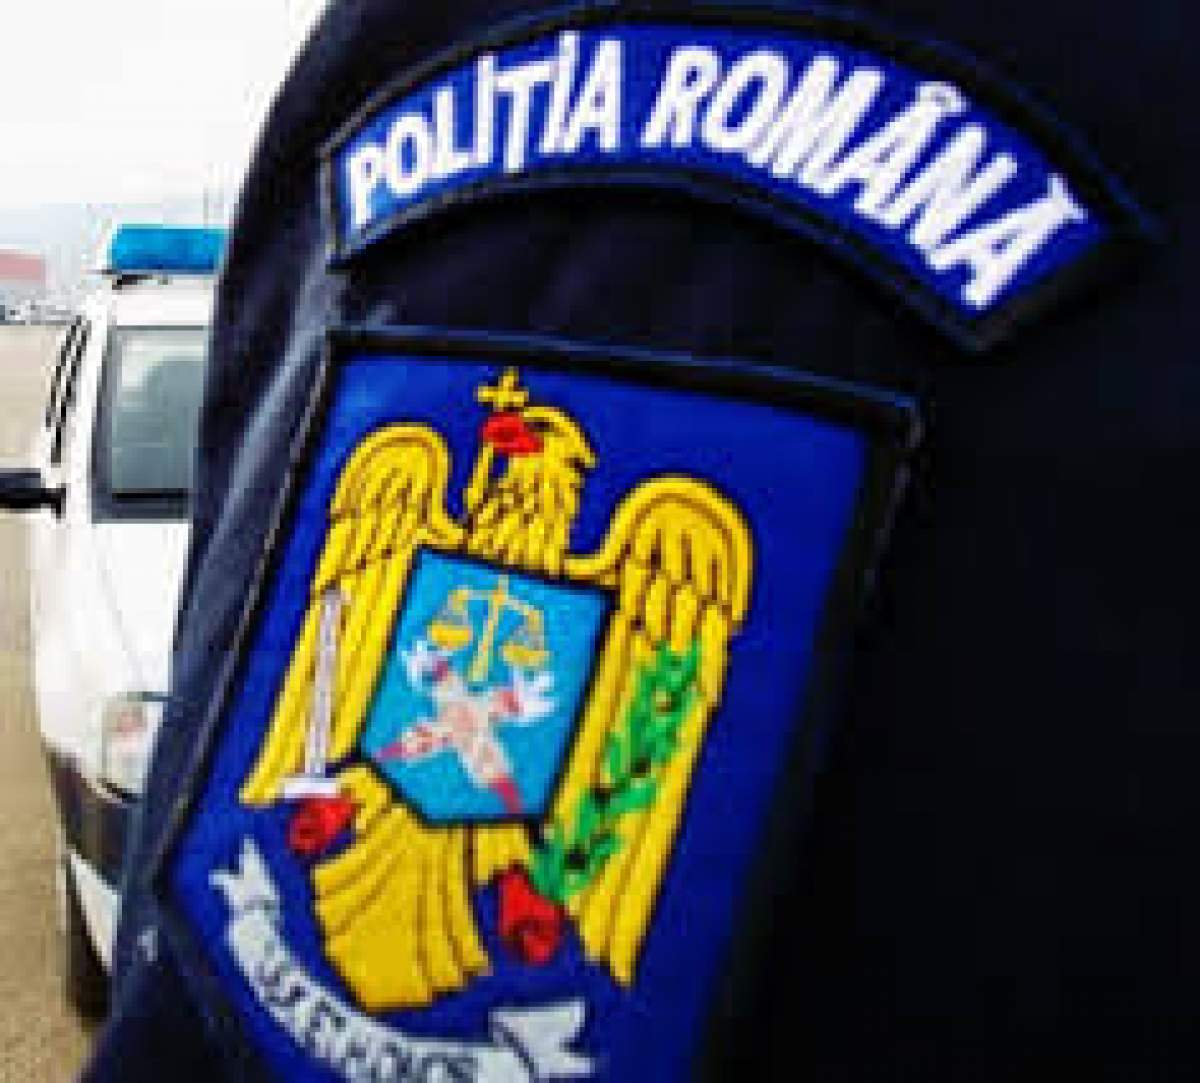 Reacție dură a Sindicatului Europol, după ce românii și-au pierdut răbdarea în Vama Nădlac: ”Noi la muncă pentru voi, voi ne înjurați pe noi”